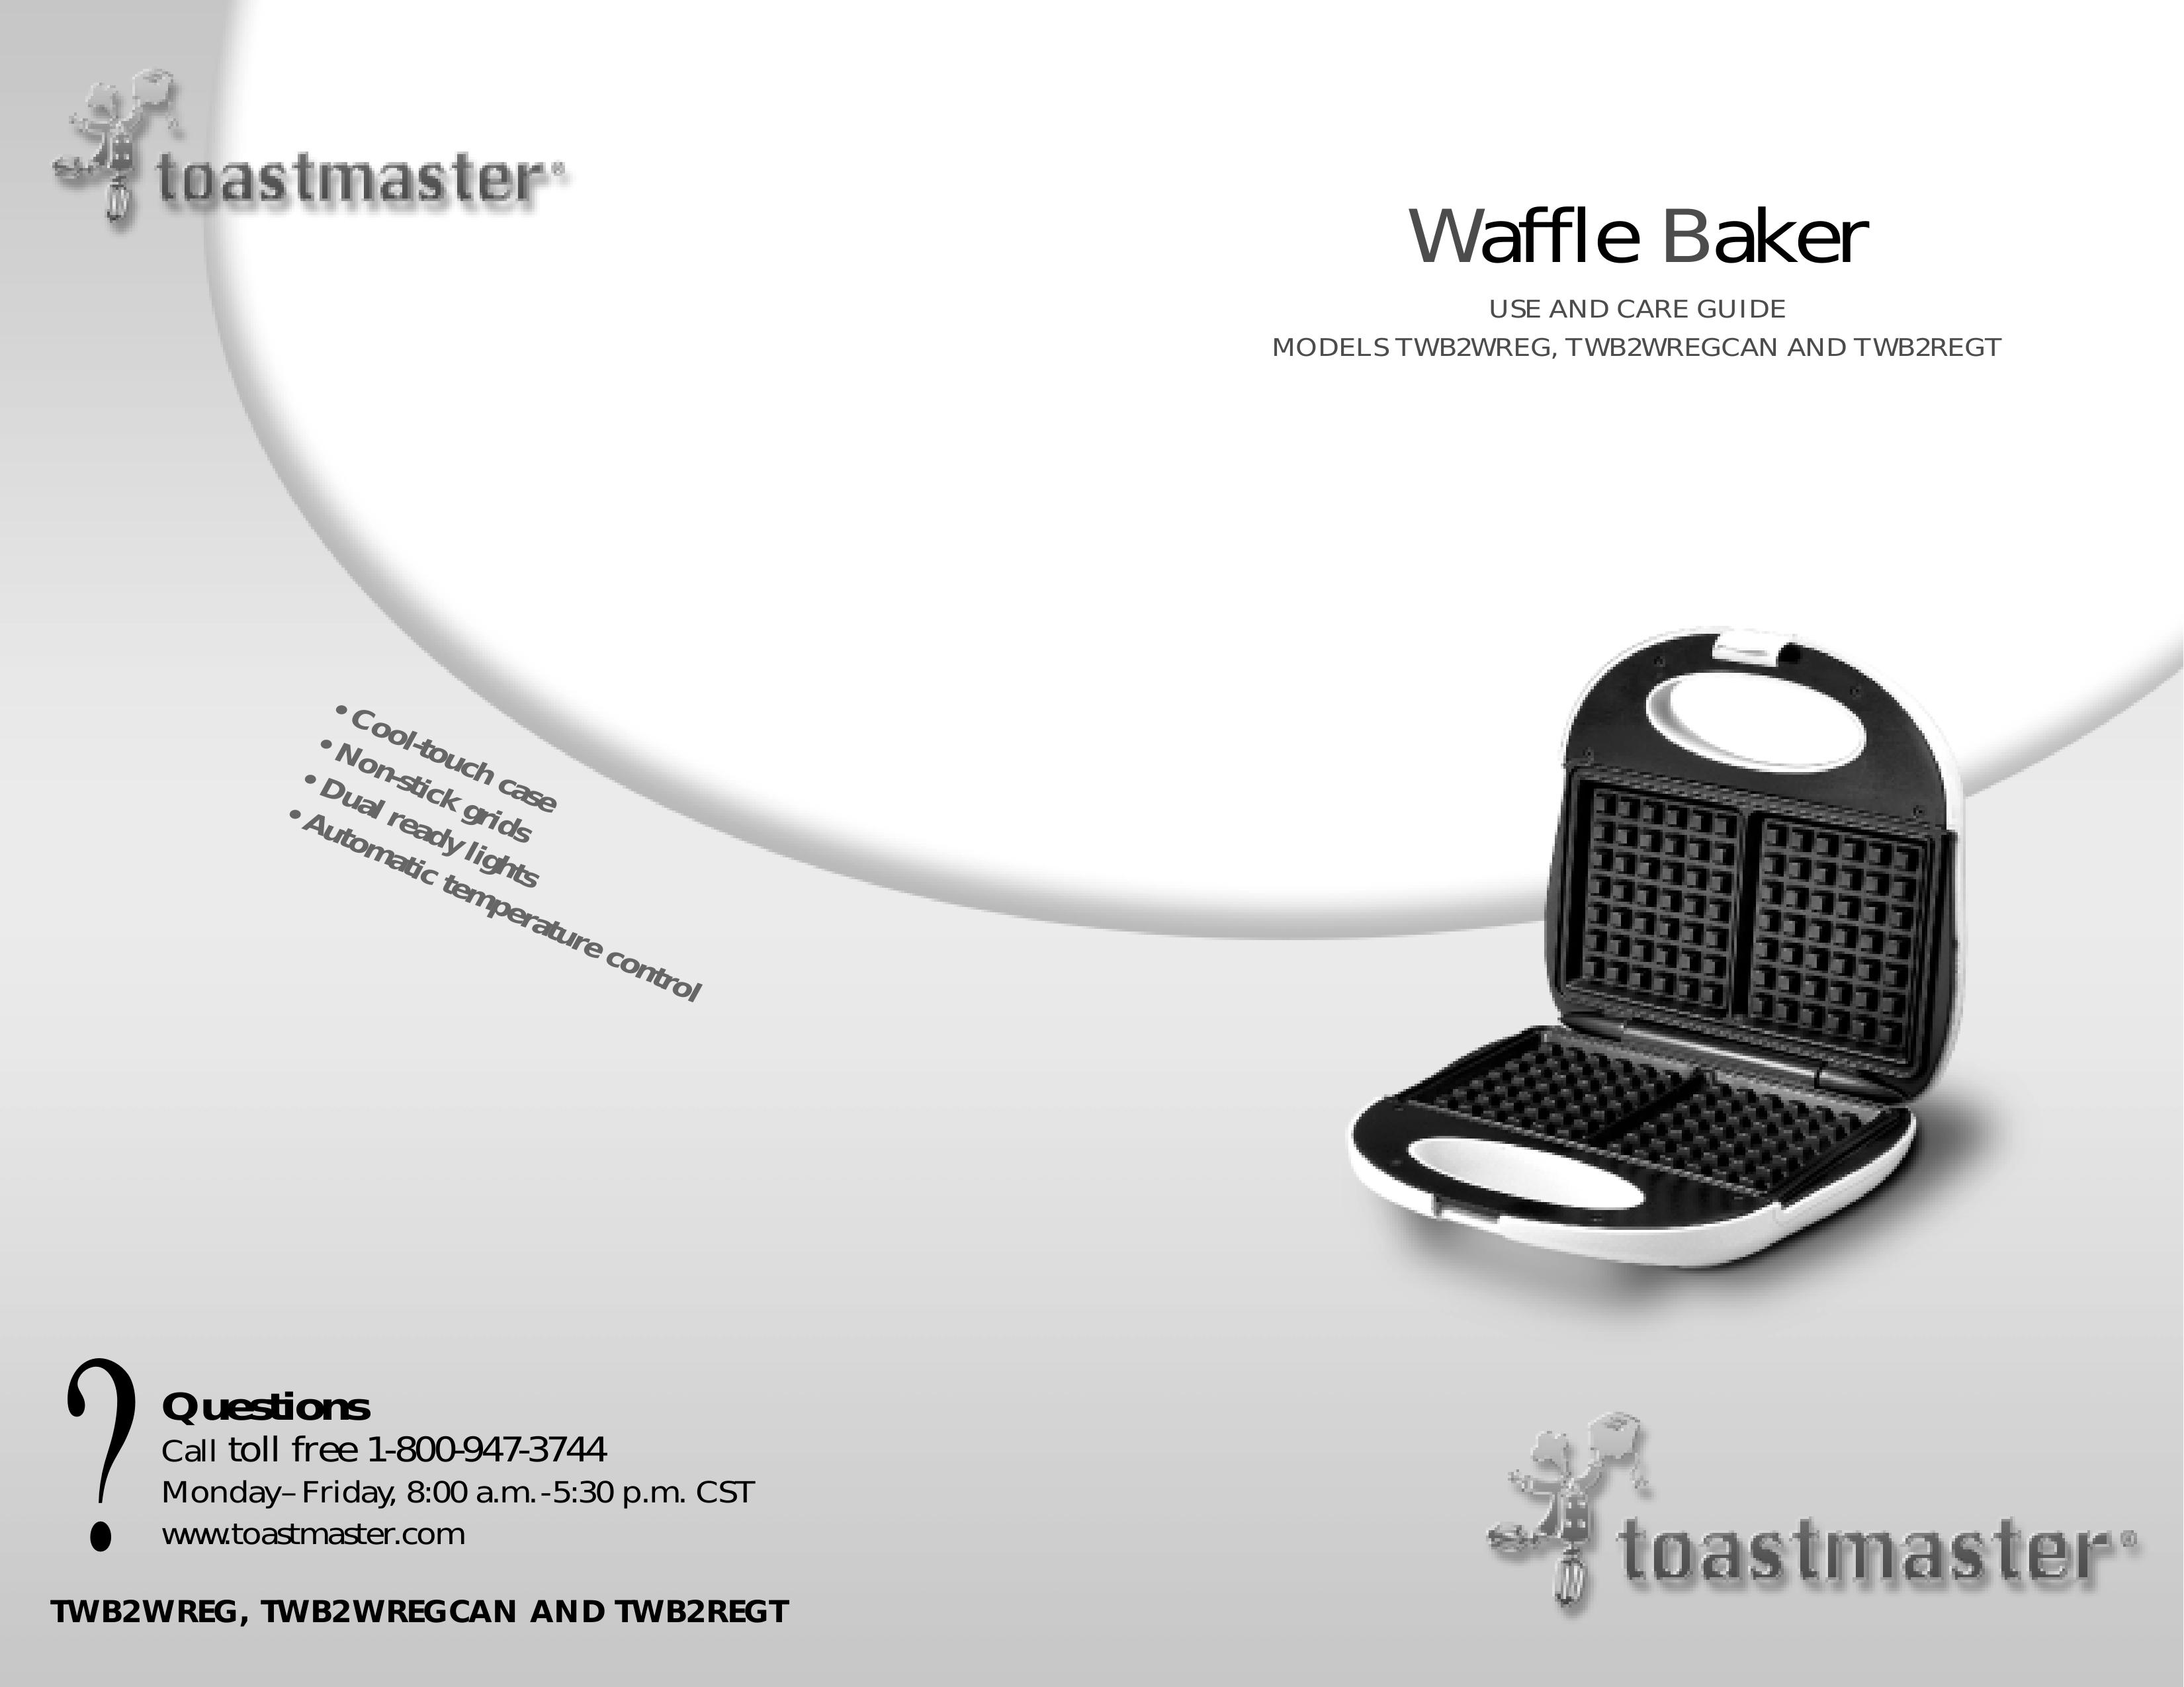 Toastmaster TWB2WREGCAN Waffle Iron User Manual